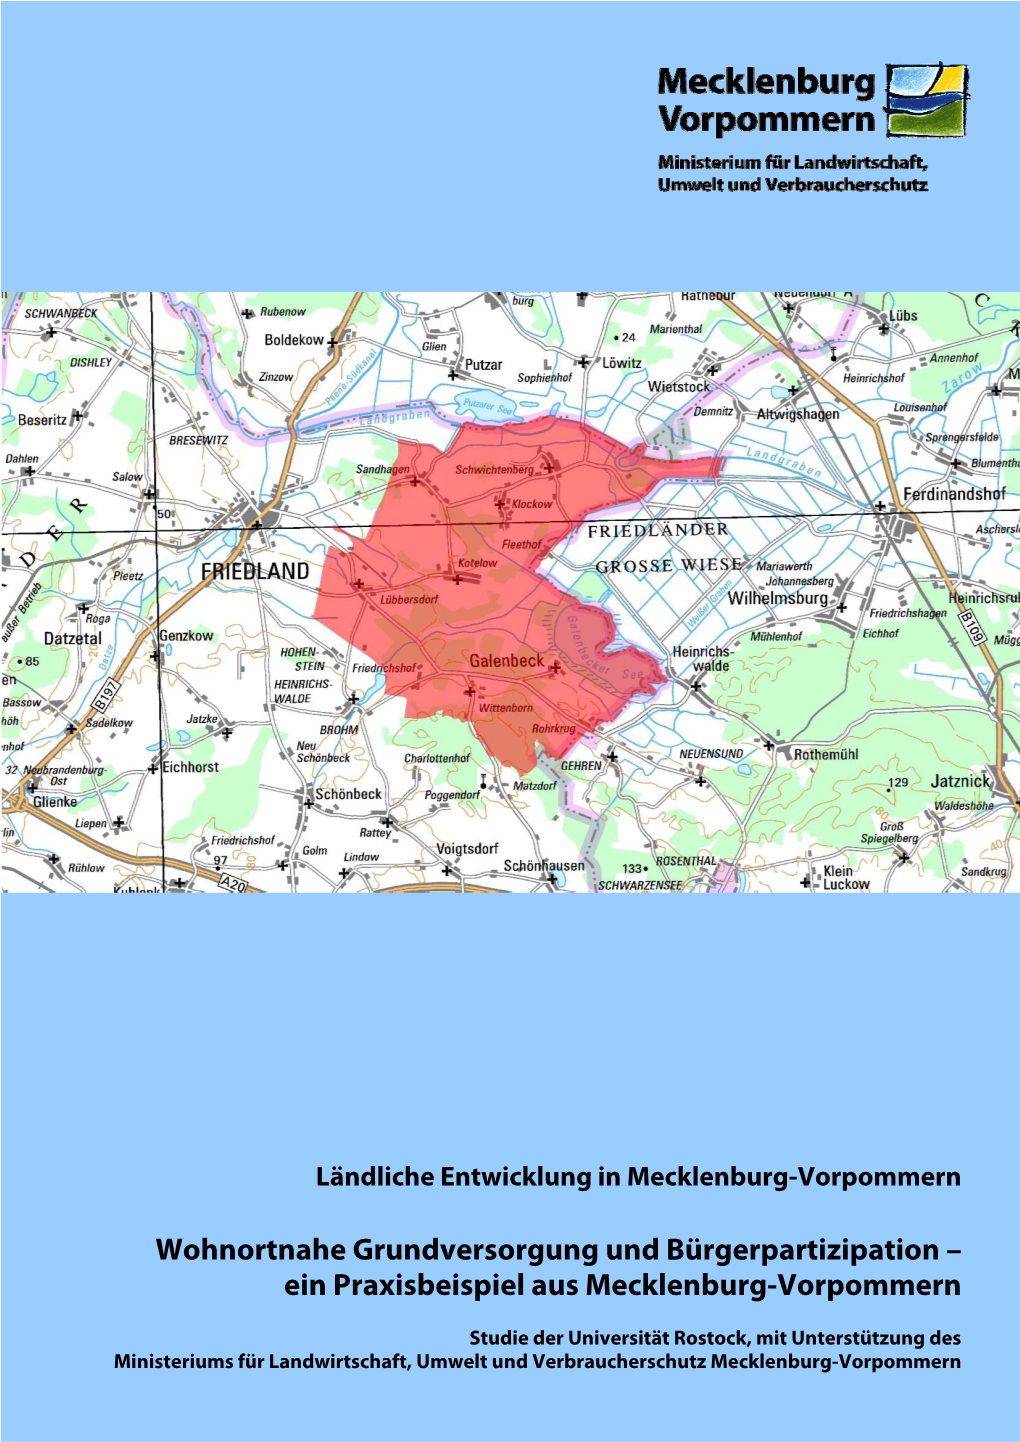 Wohnortnahe Grundversorgung Und Bürgerpartizipation – Ein Praxisbeispiel Aus Mecklenburg-Vorpommern